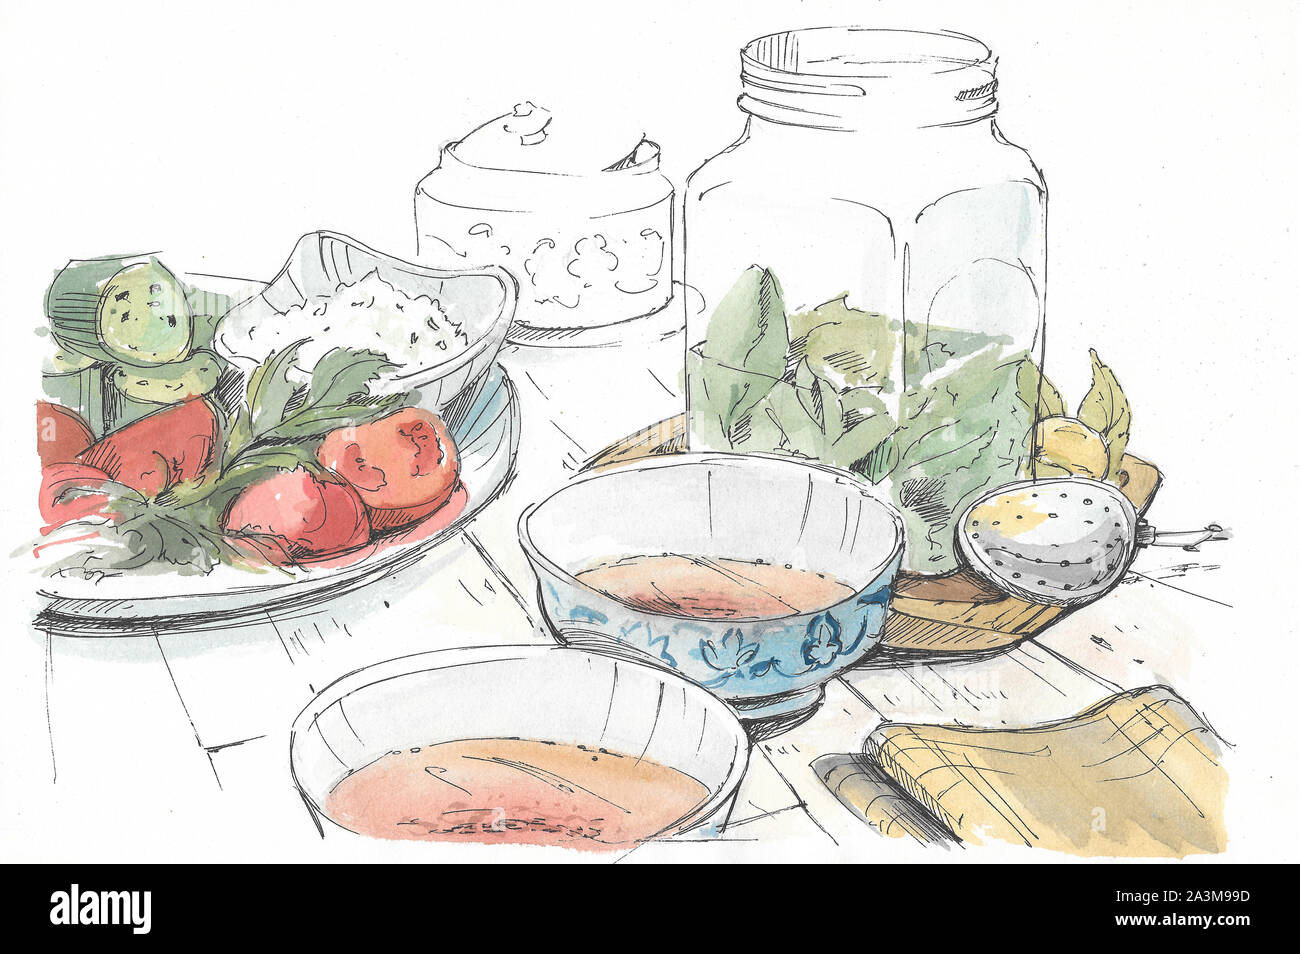 Le dîner sur la table : assiettes de légumes, soupe, pickles Banque D'Images